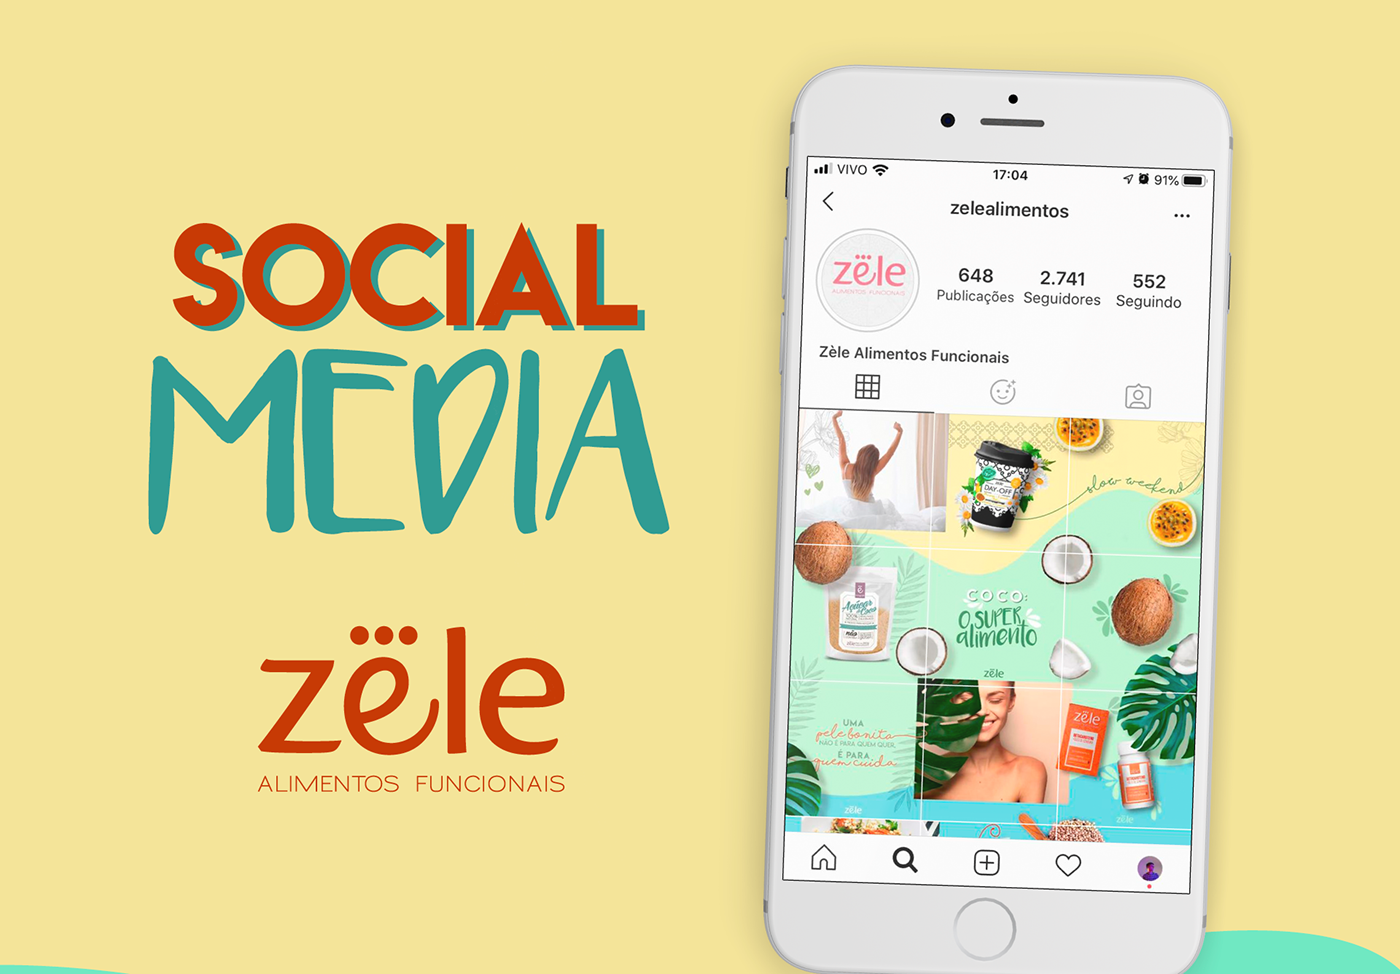 zele Alimentos Funcionais Health saúde social media Redes Sociais natural puzzle feed instagram feed